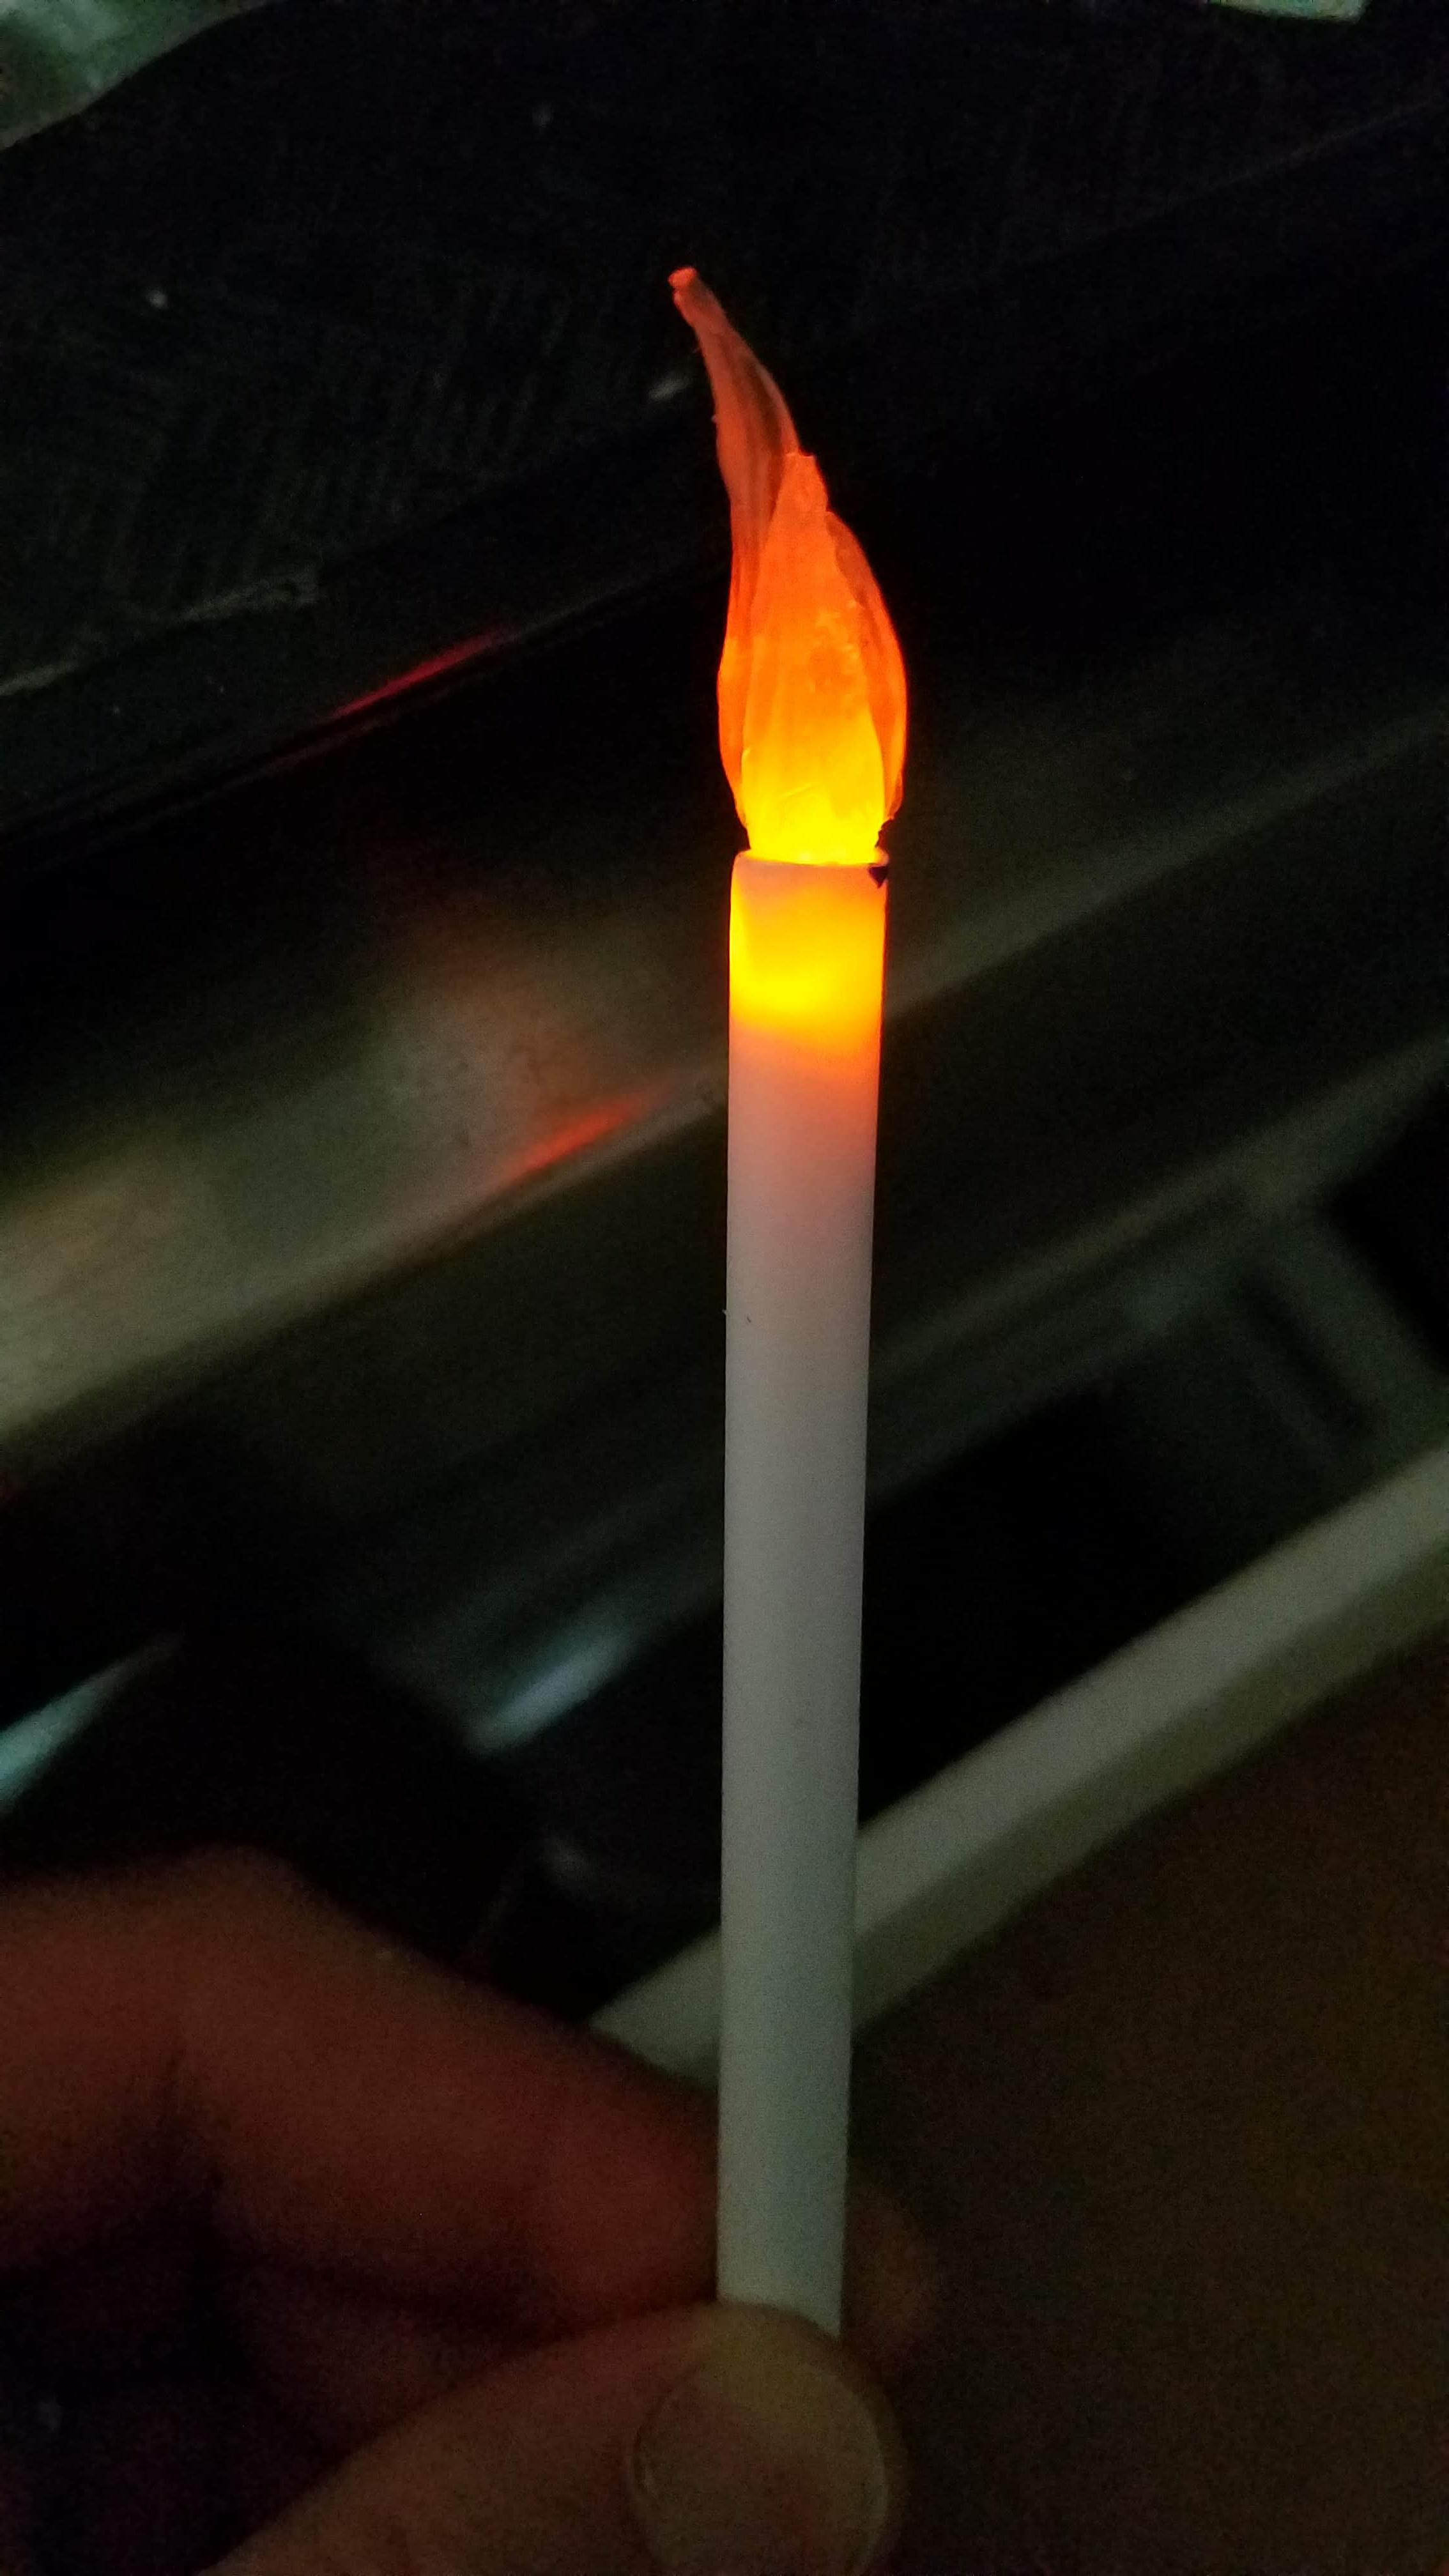 Flickering LED torch